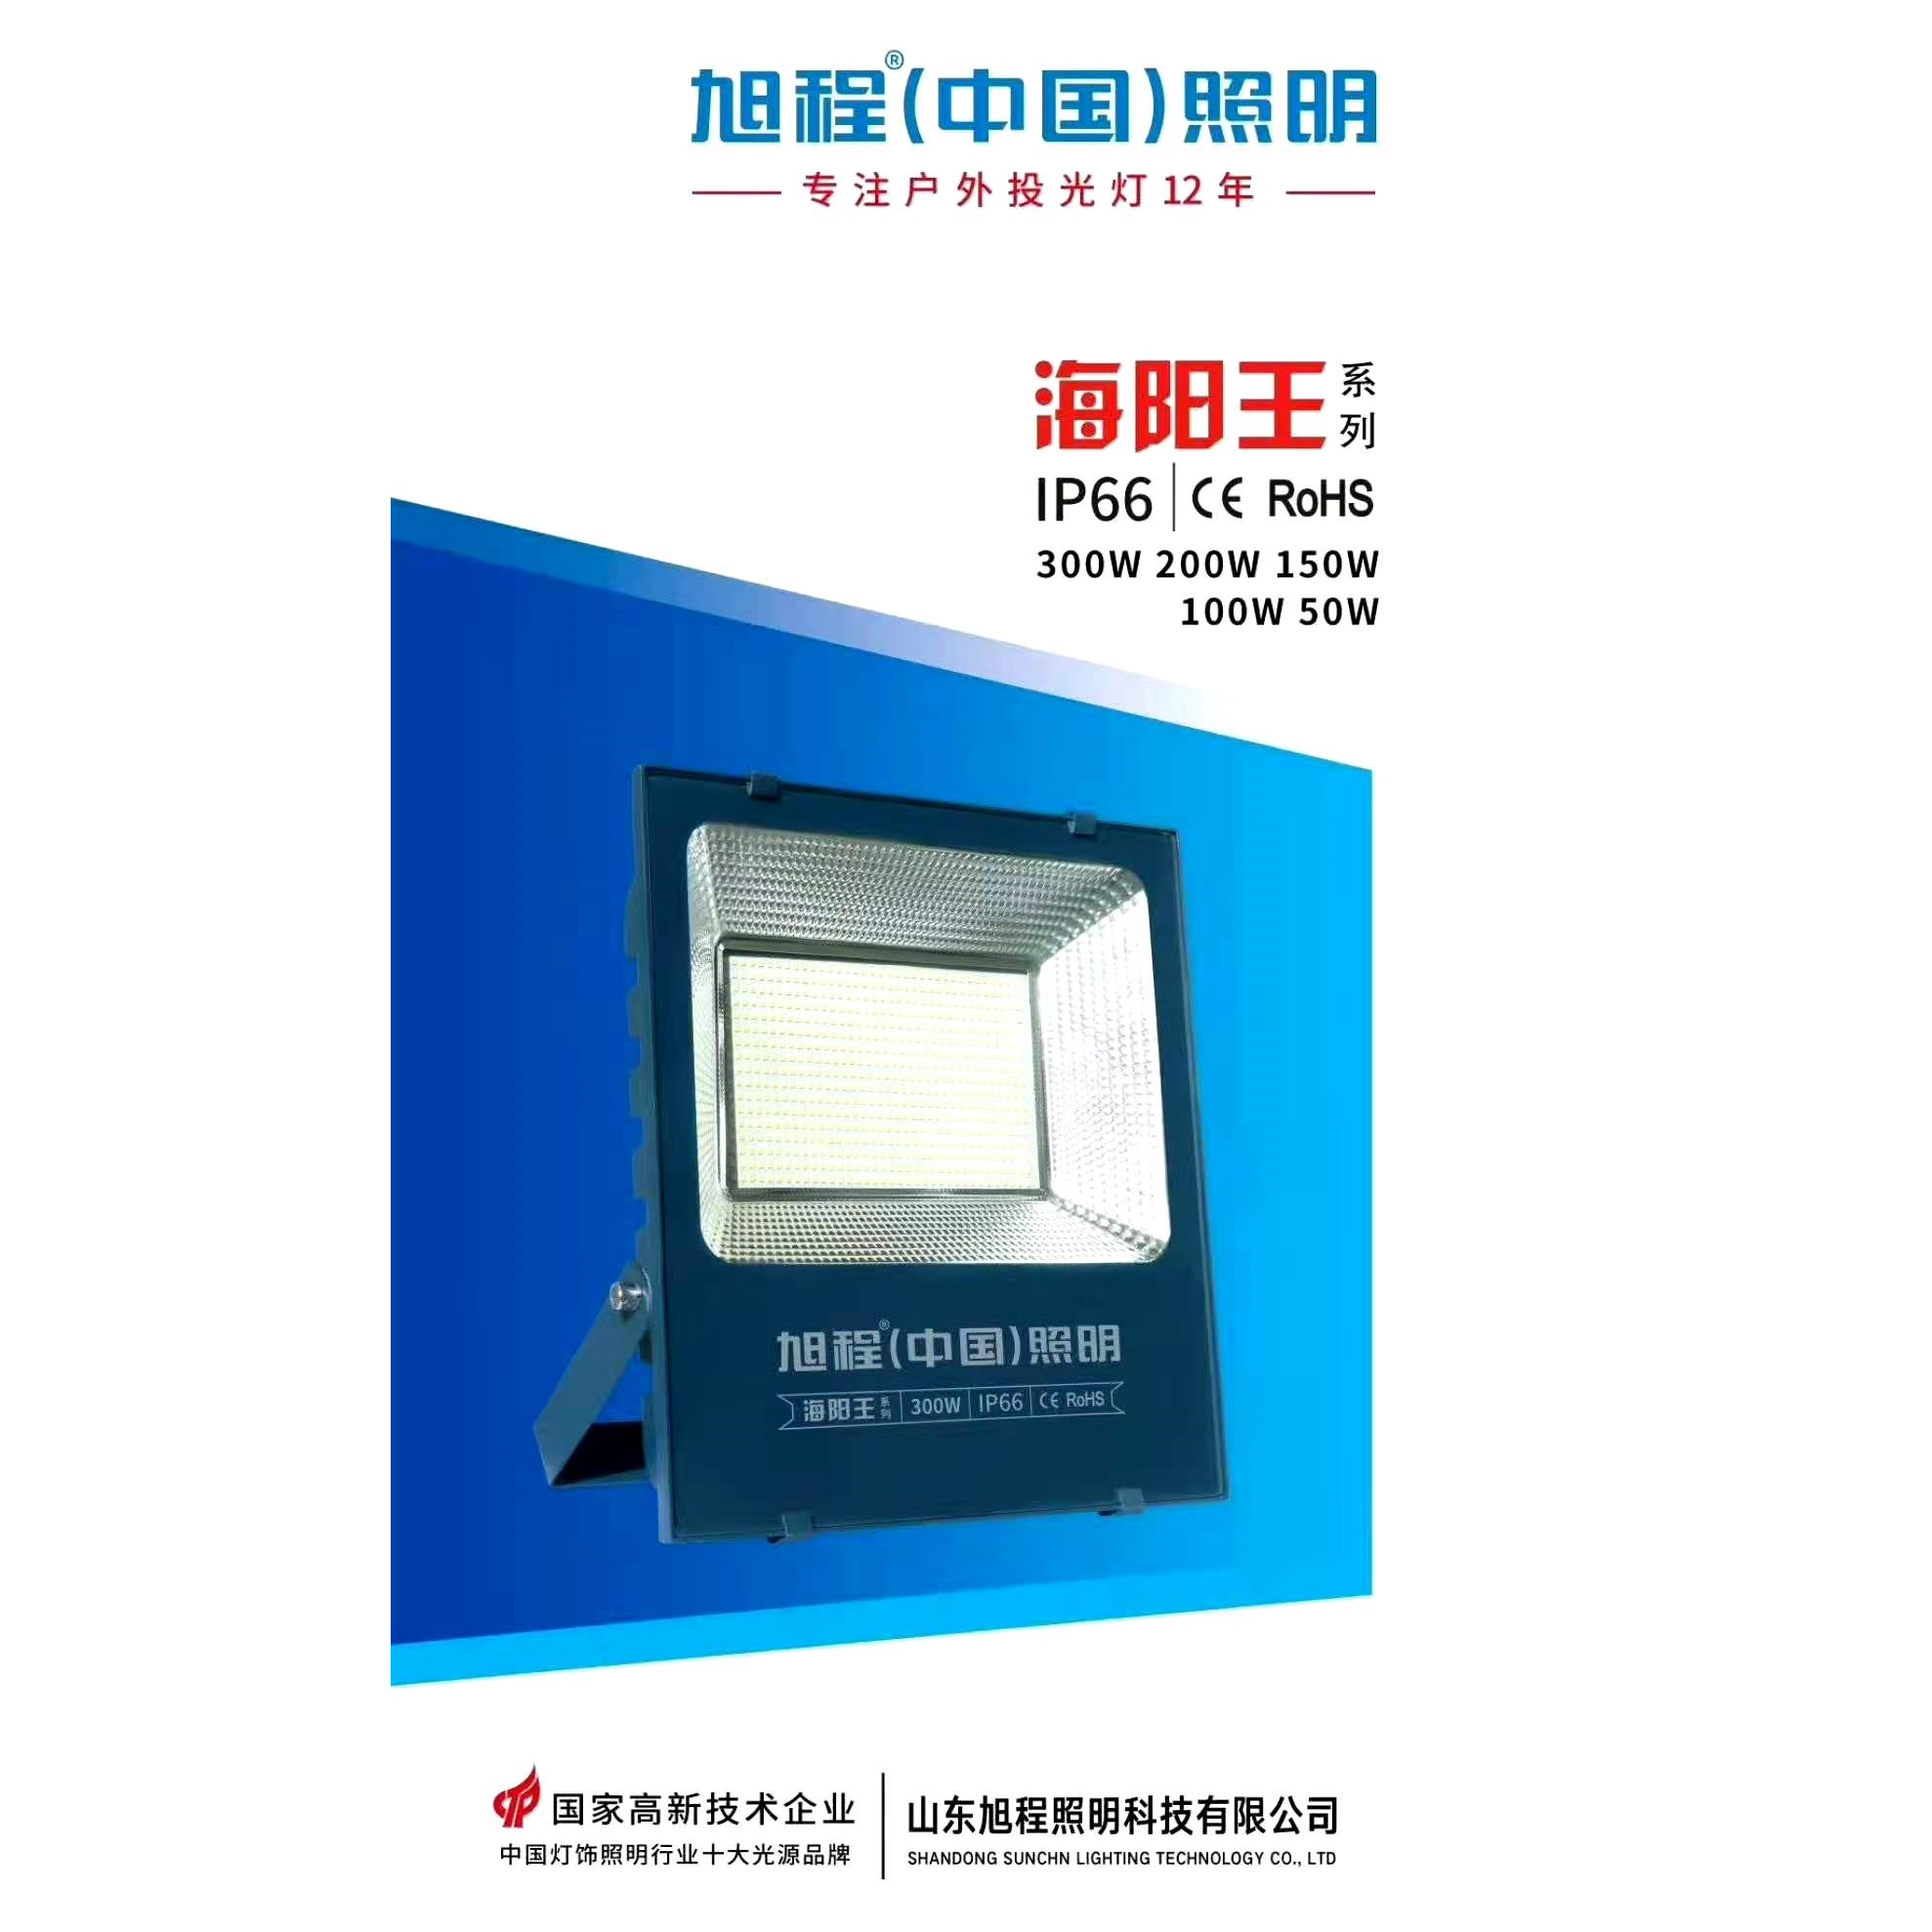 Haiyang King series IP66 projection lamp